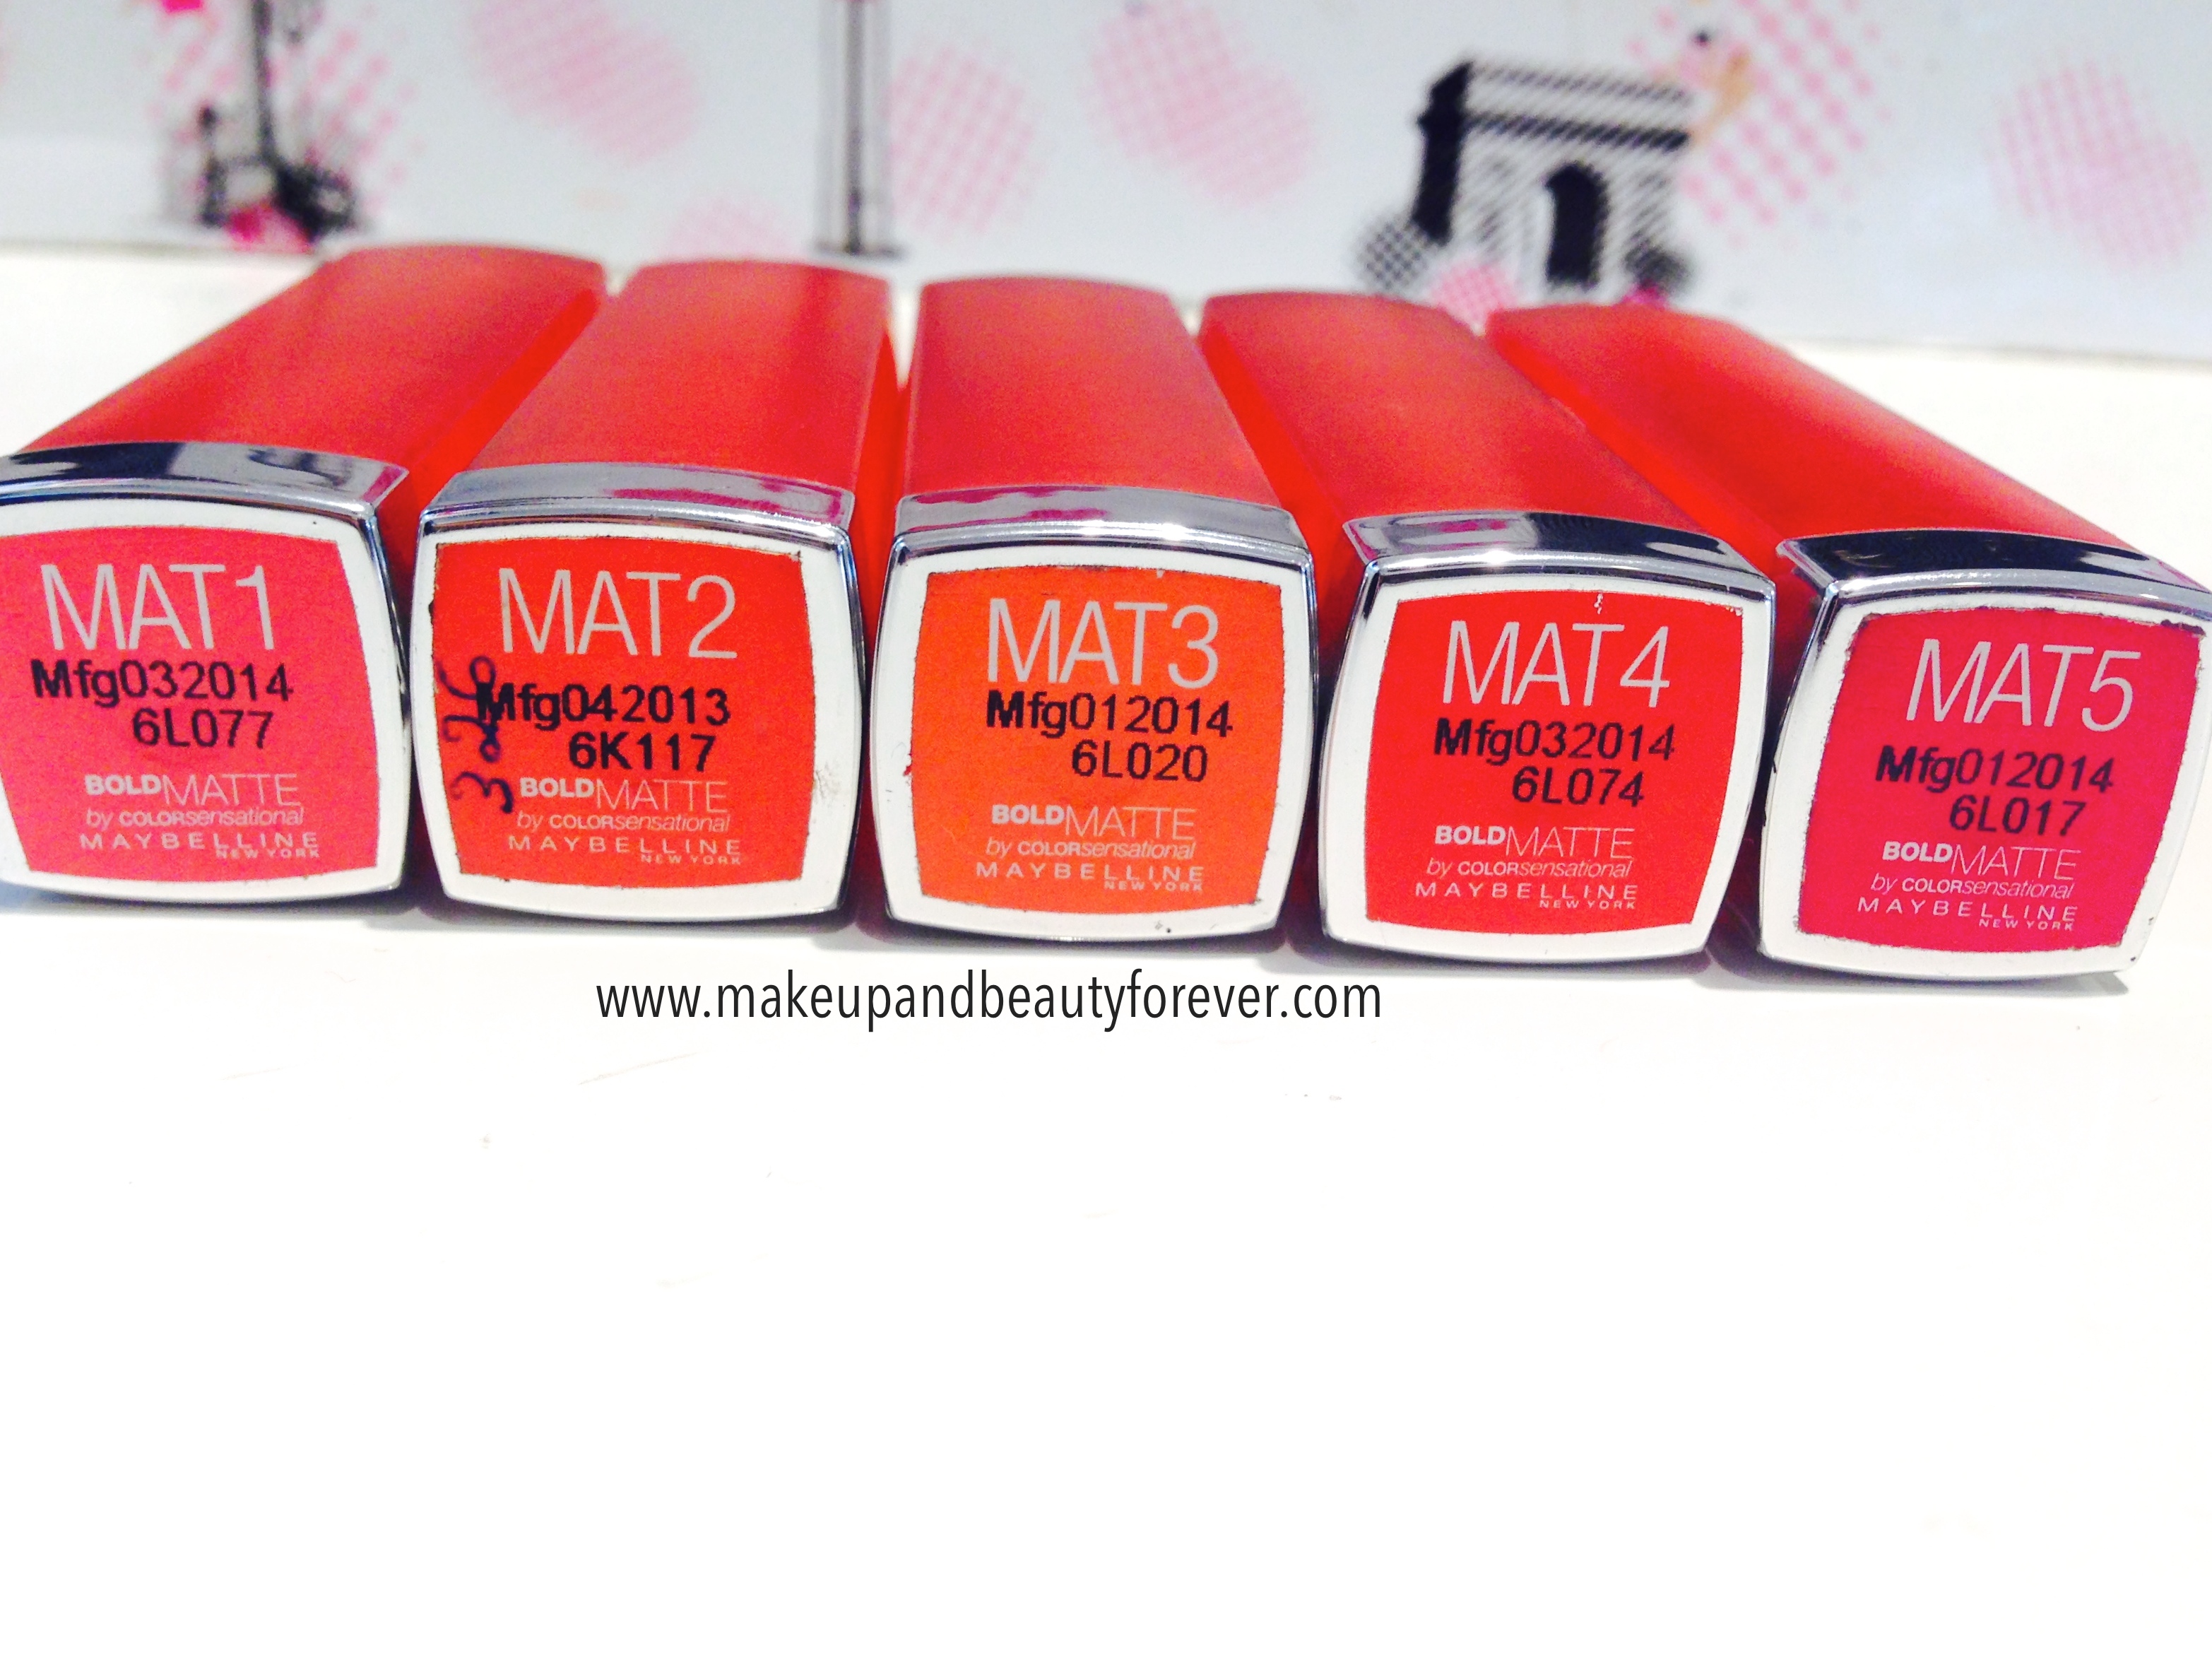 All Maybelline Bold Matte Colorsensational Lipsticks Review, Swatches, Shades, Price and Details Mat 1, Mat 2, Mat 3, Mat 4, Mat 5